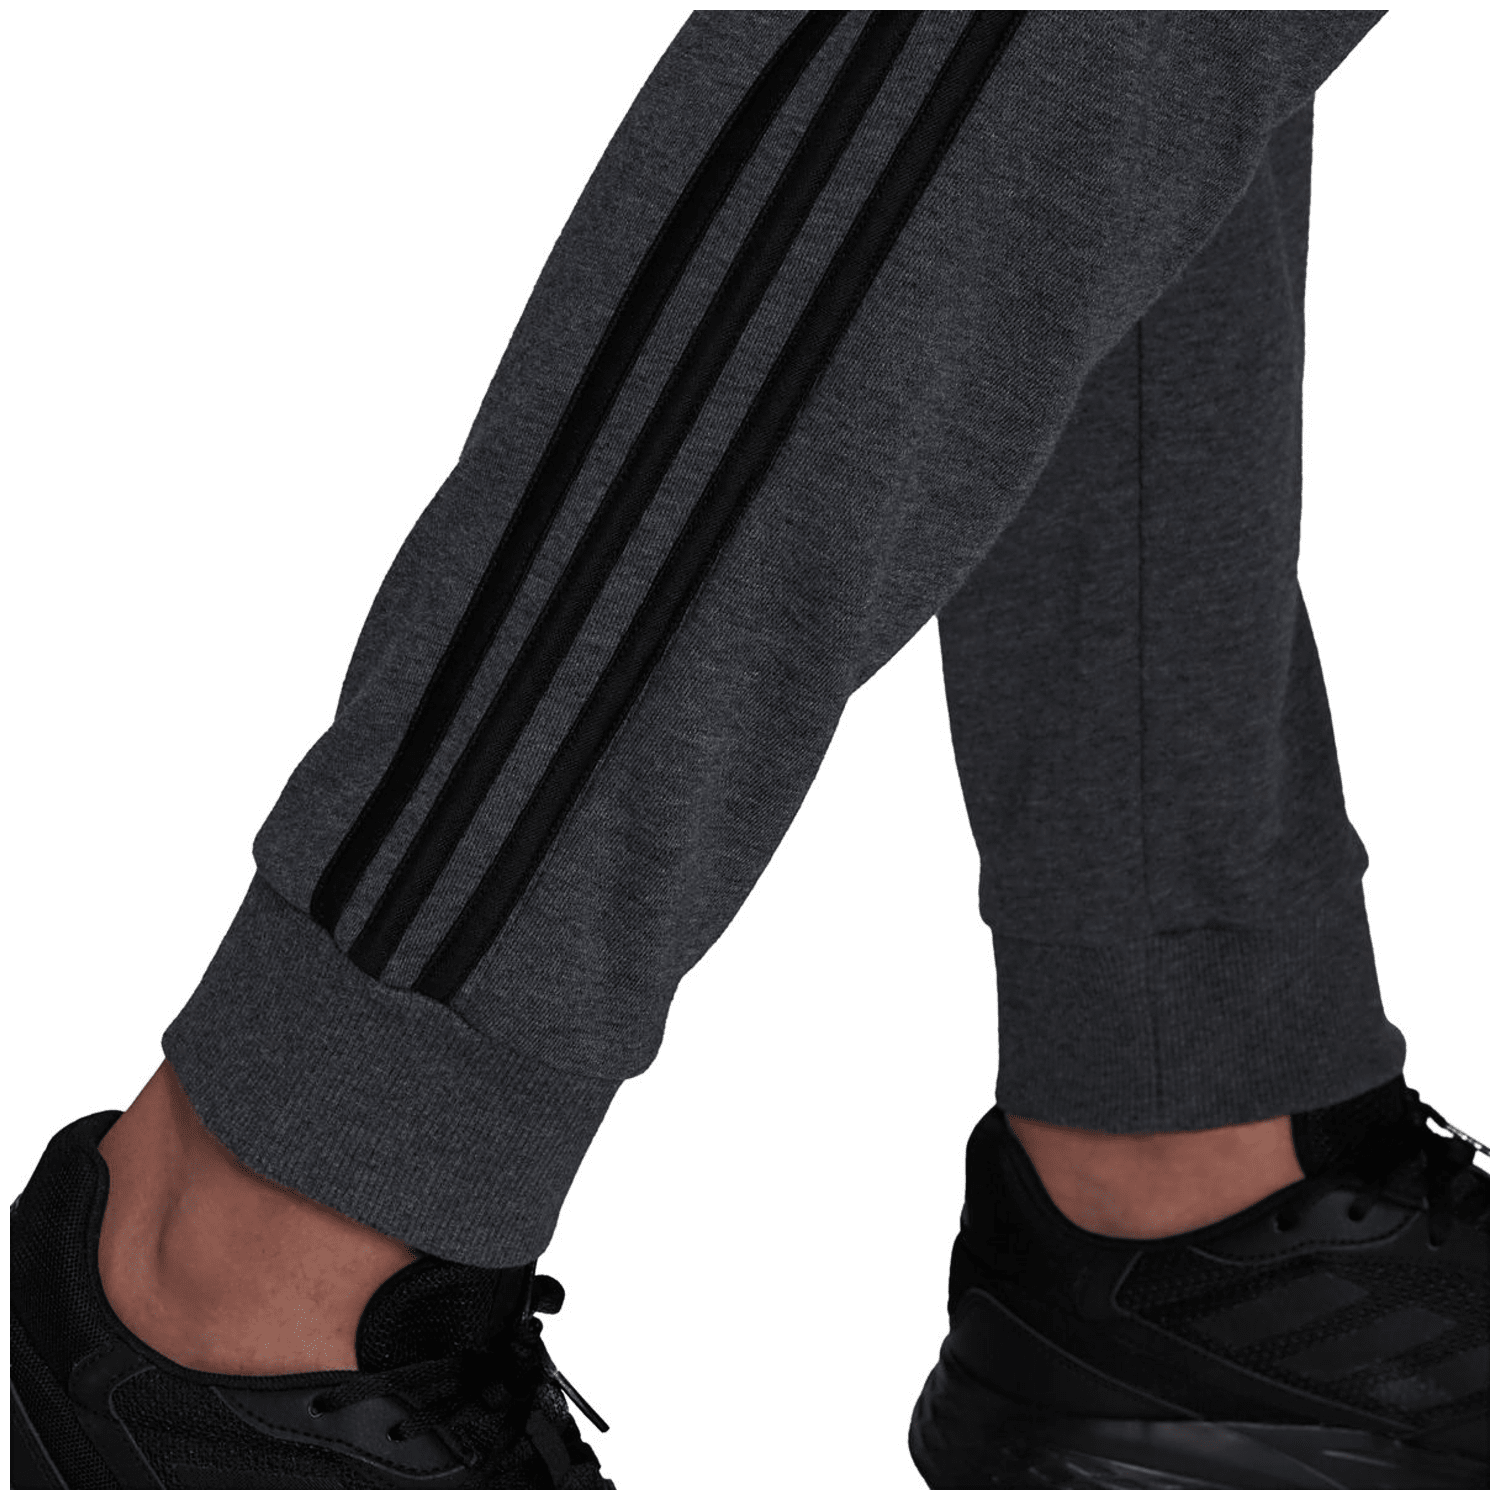 Adidas Essentials French Terry Tapered Cuff 3-Streifen Hose Herren